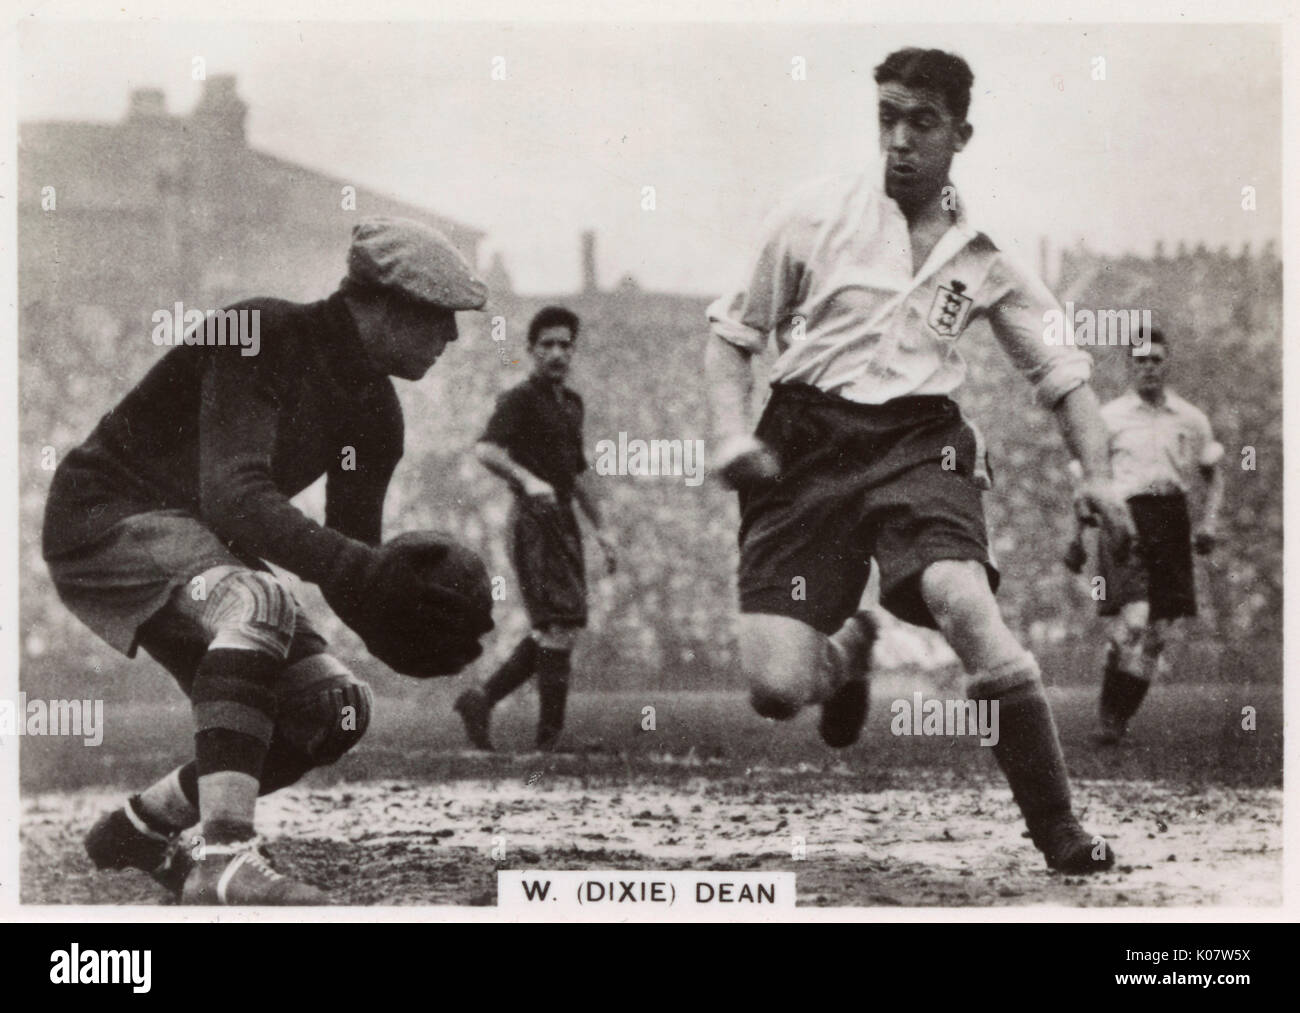 W R (Dixie) doyen (1907-1980), footballeur anglais, capitaine de l'équipe de football Everton FC, qu'on voit ici (à droite) en action lors d'un match. Date : 1930 Banque D'Images